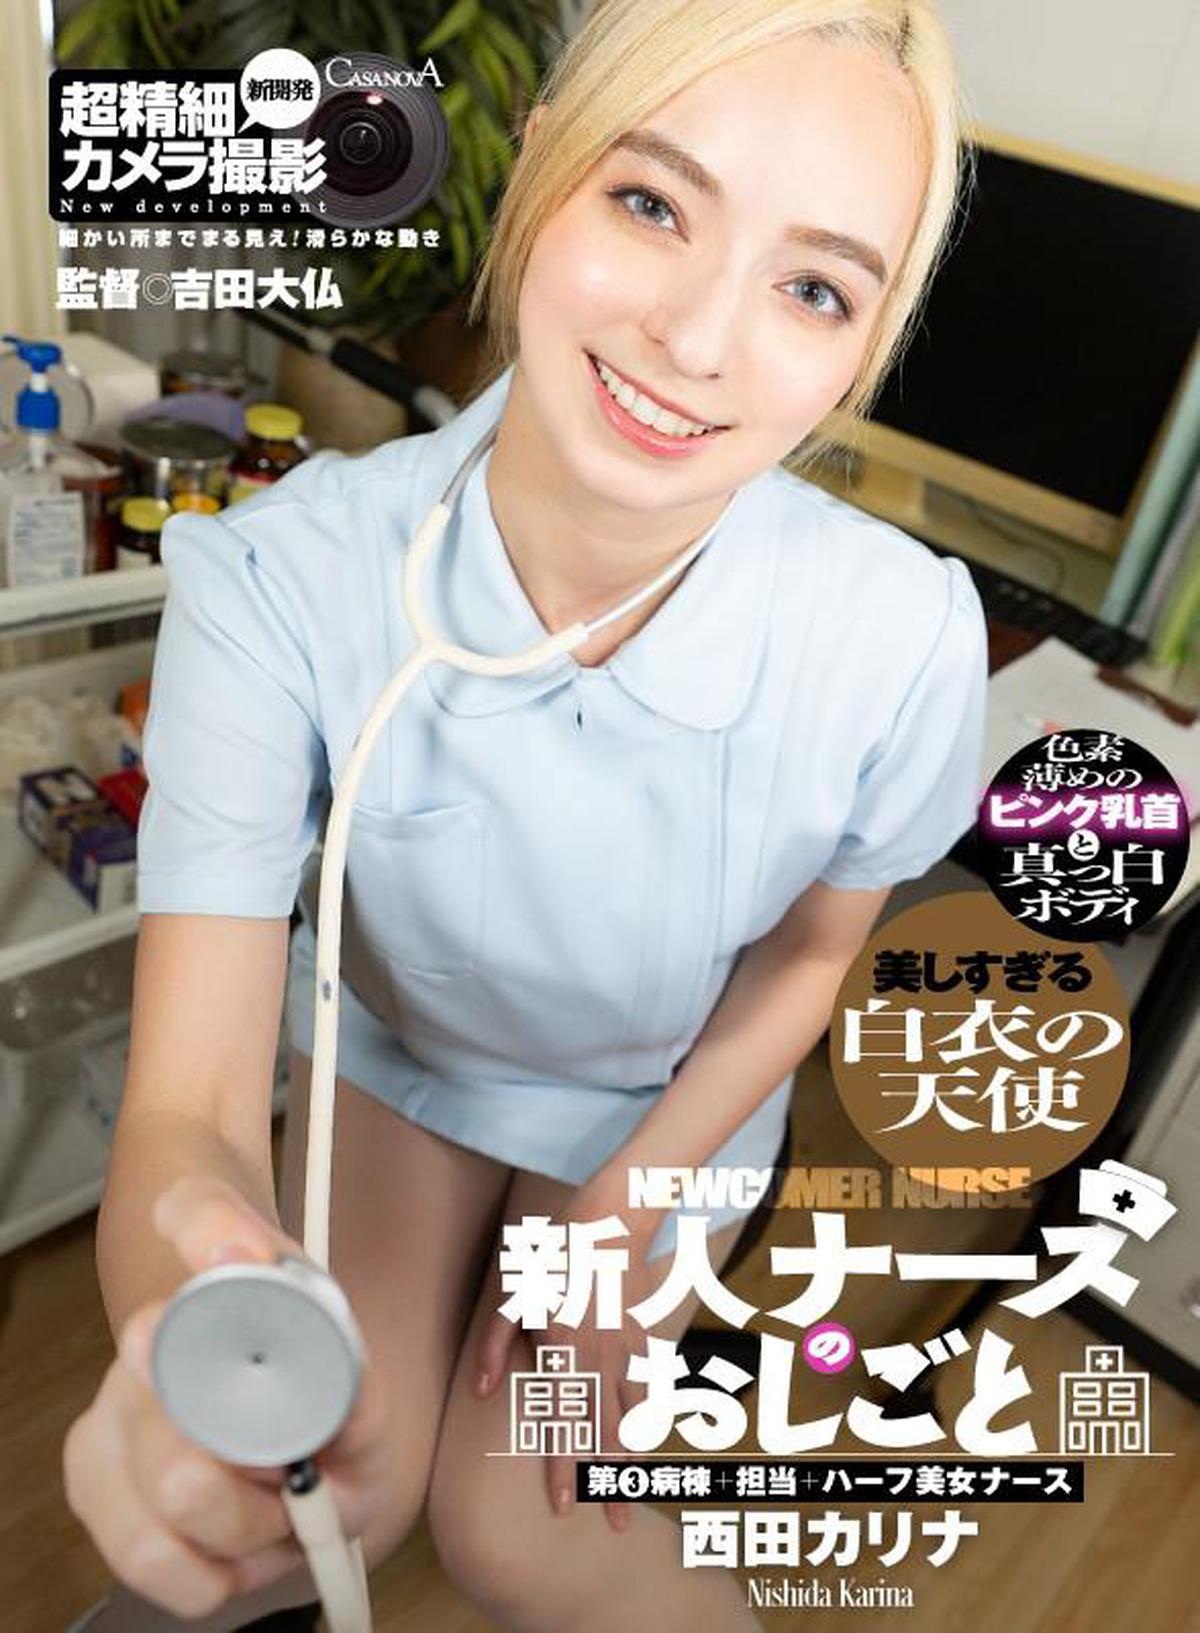 (VR) CAPI-143 Neue Krankenschwester Arbeit 3. Station + Ladung + Halbschönheitsschwester Karina Nishida